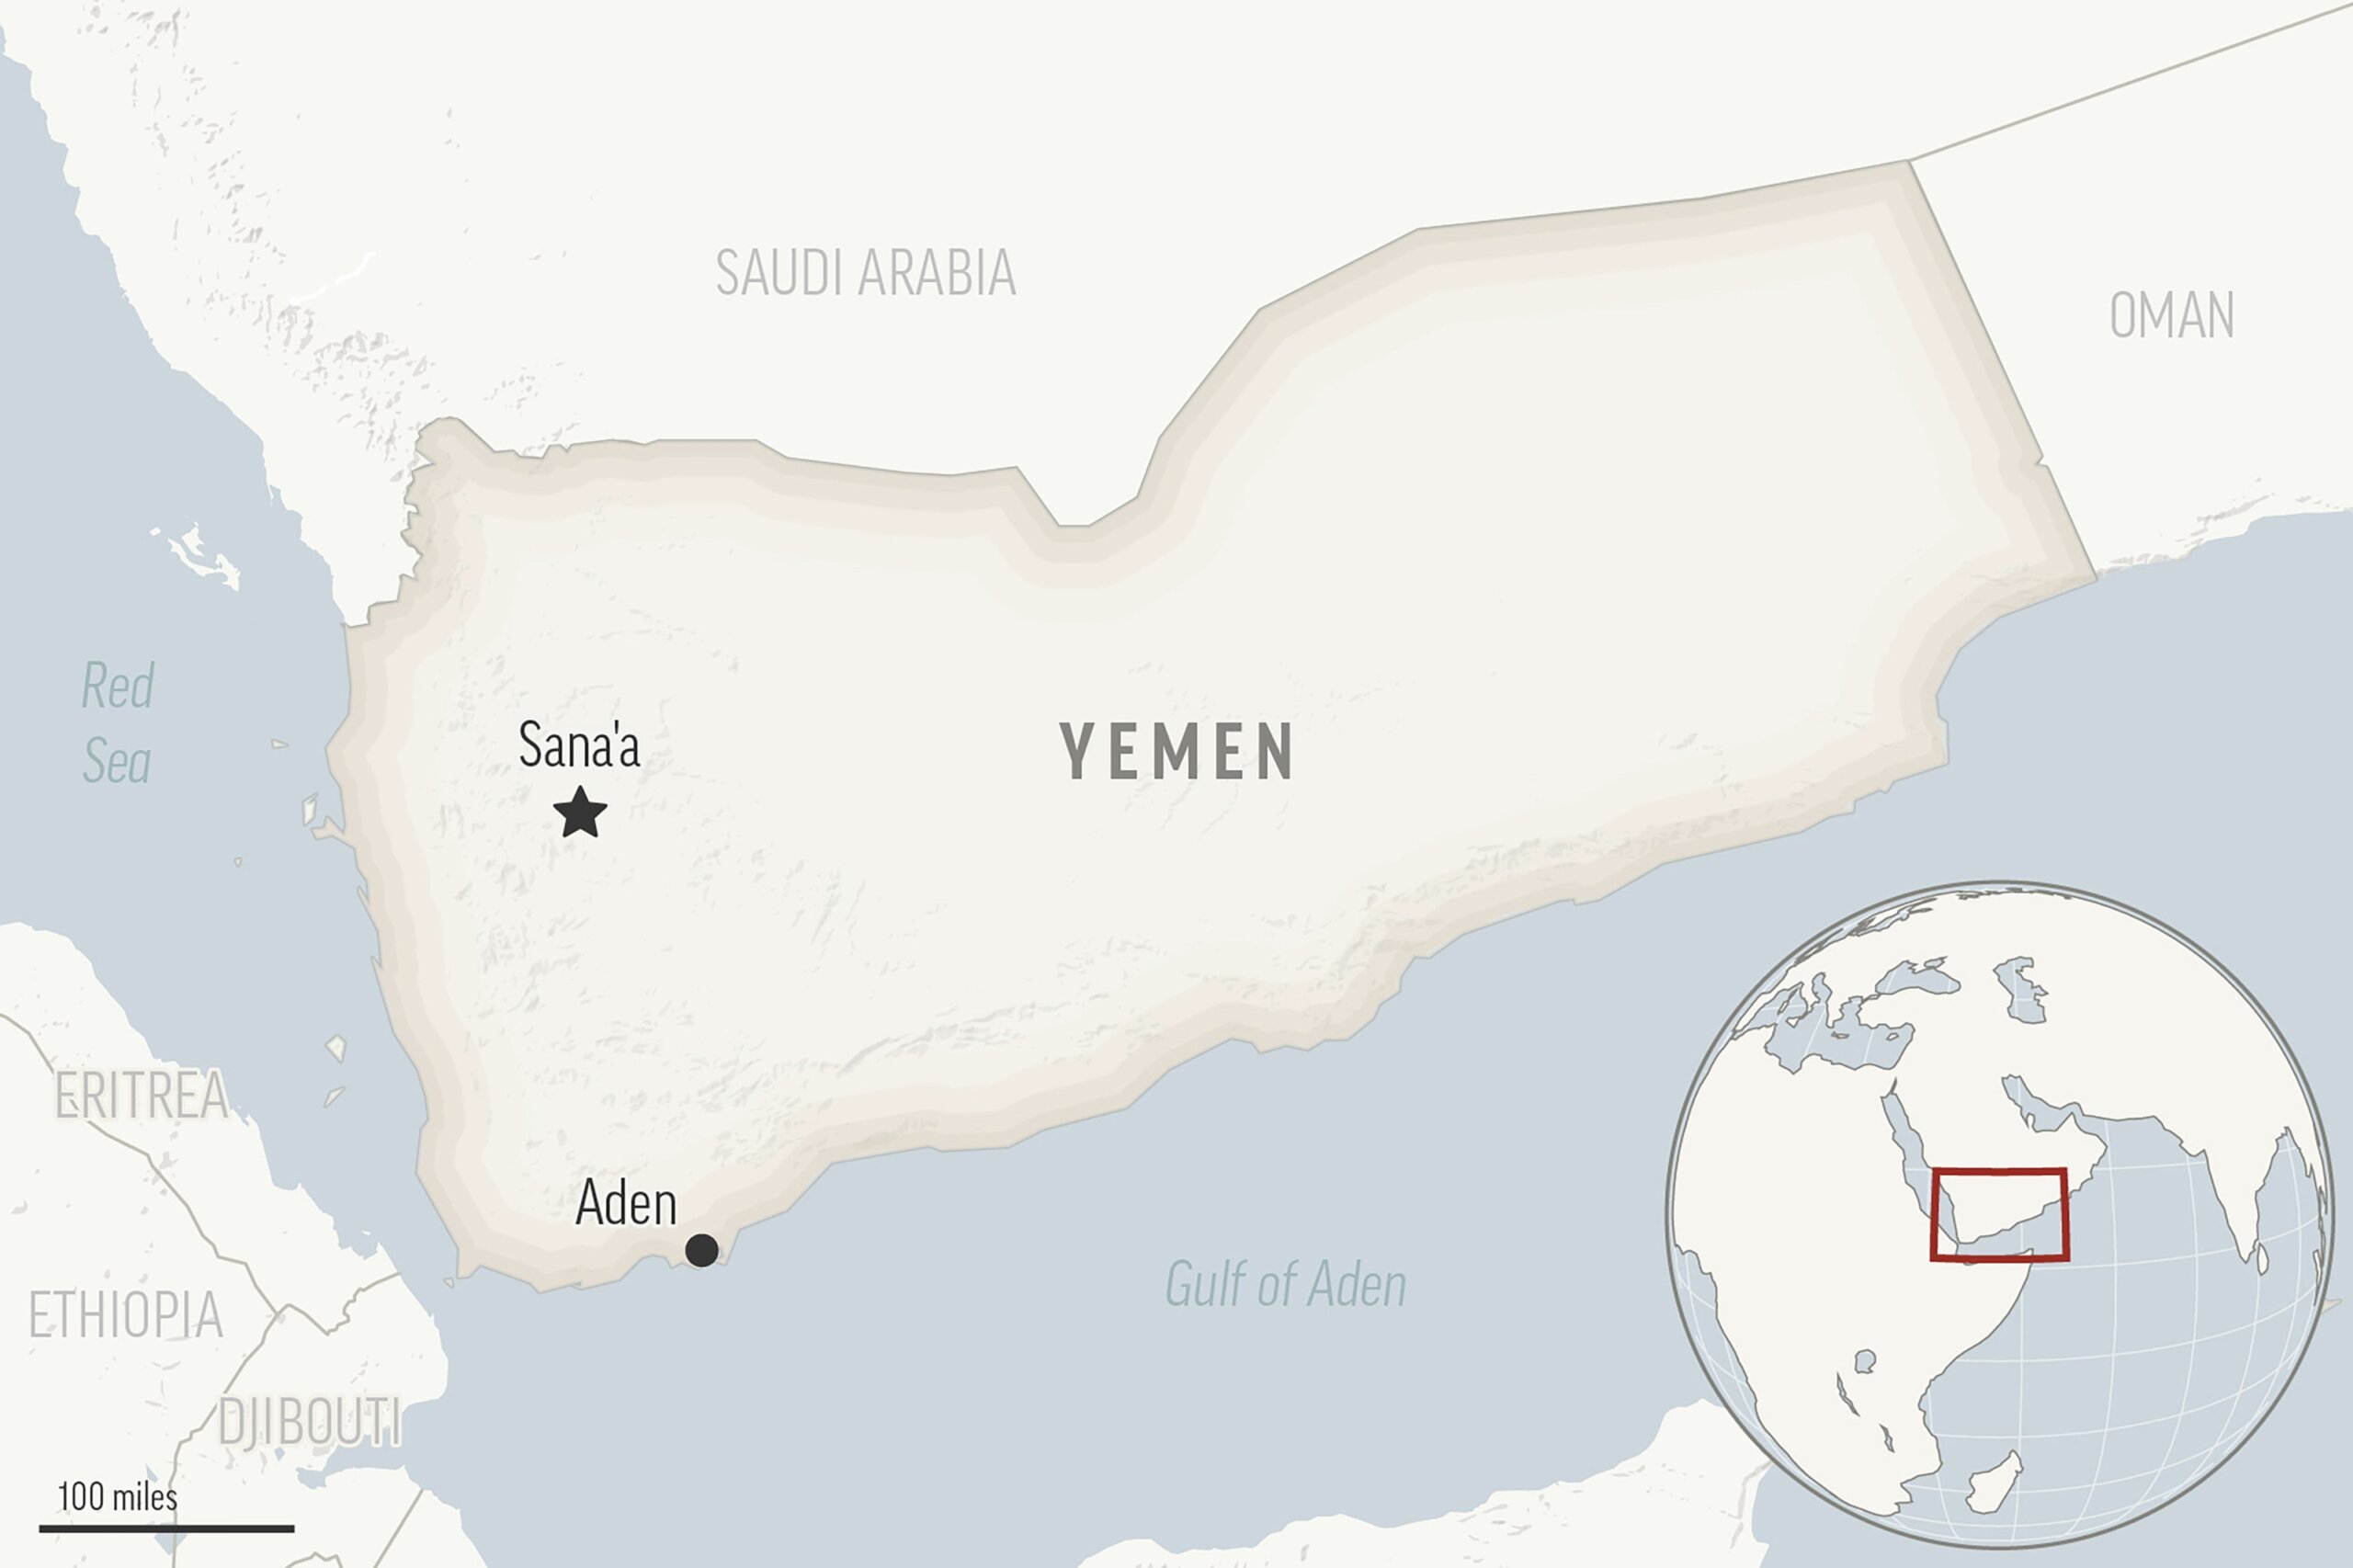 Yemen’s Houthi rebels claim attacks on Israel, drawing their main sponsor Iran closer to Hamas war